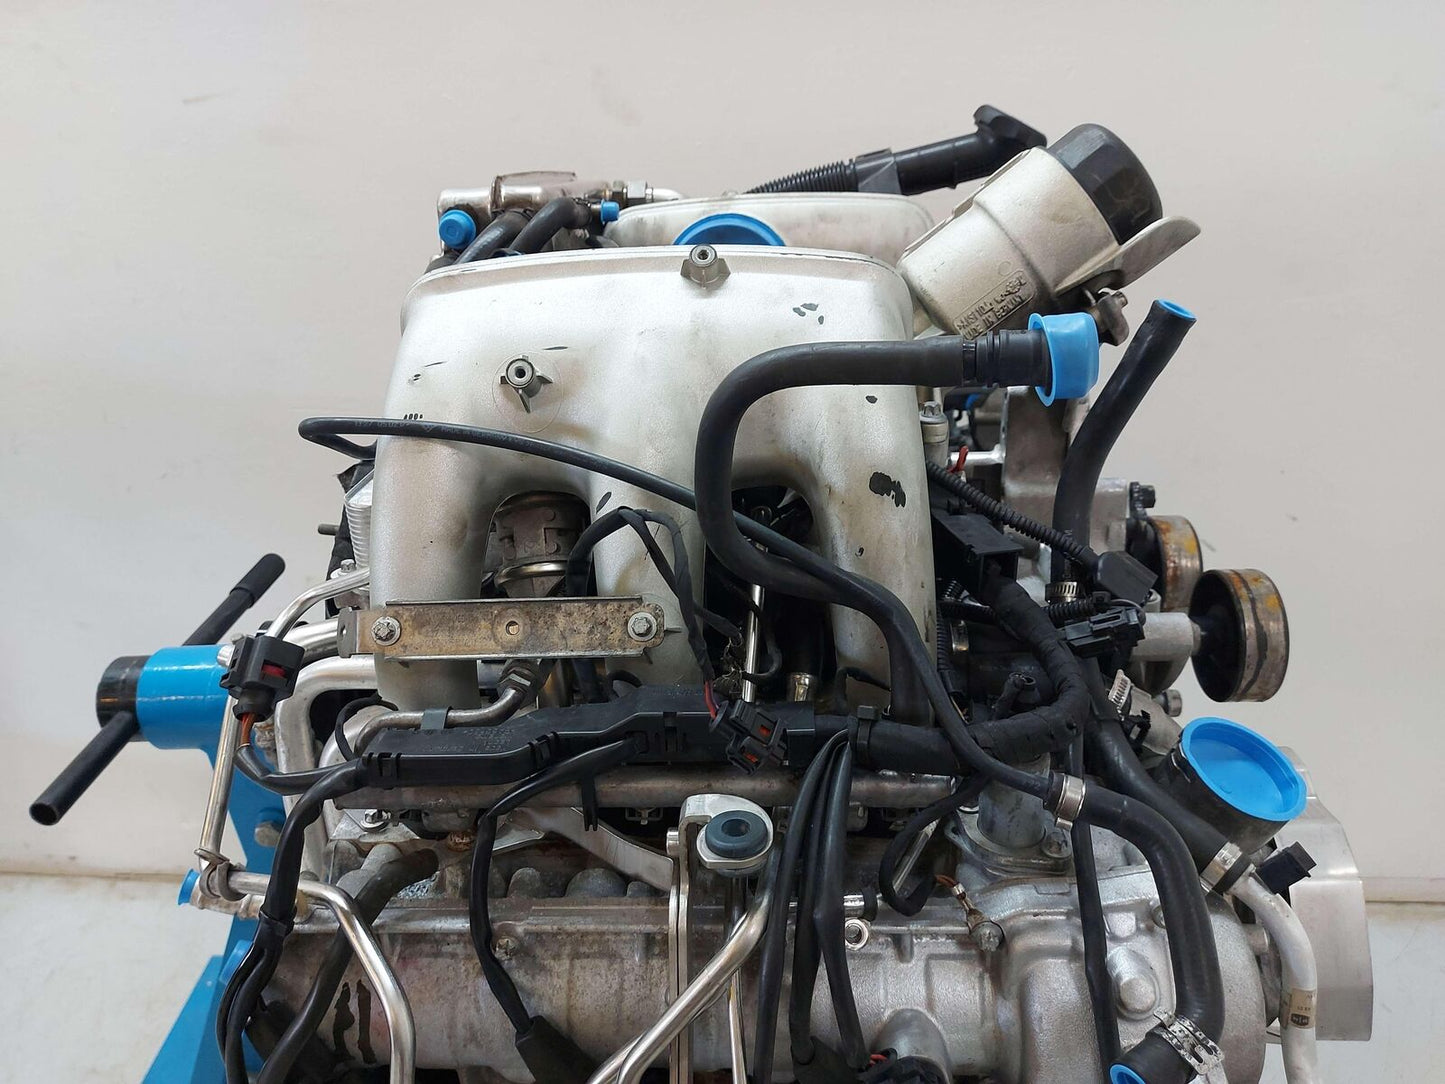 2007 PORSCHE 911 997 997.1 Turbo Engine 3.6L M96 M96.05 MEZGER